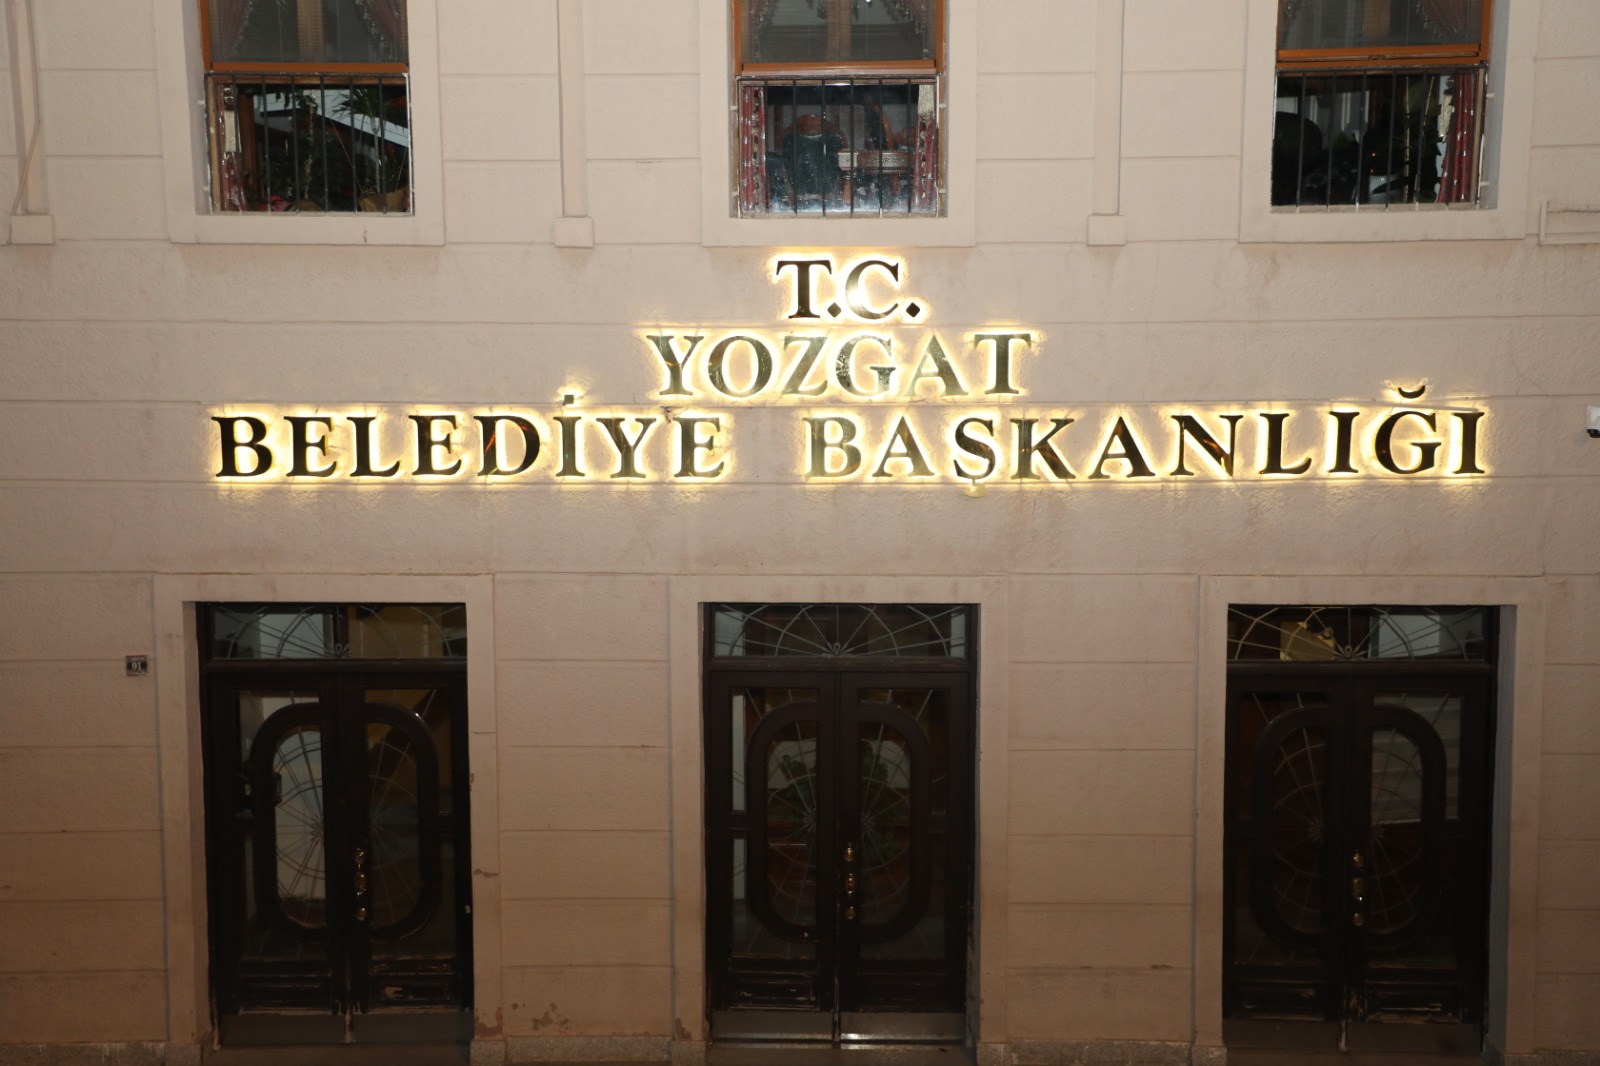 Yozgat Belediyesi’nin tabelasına T.C. ibaresi eklendi